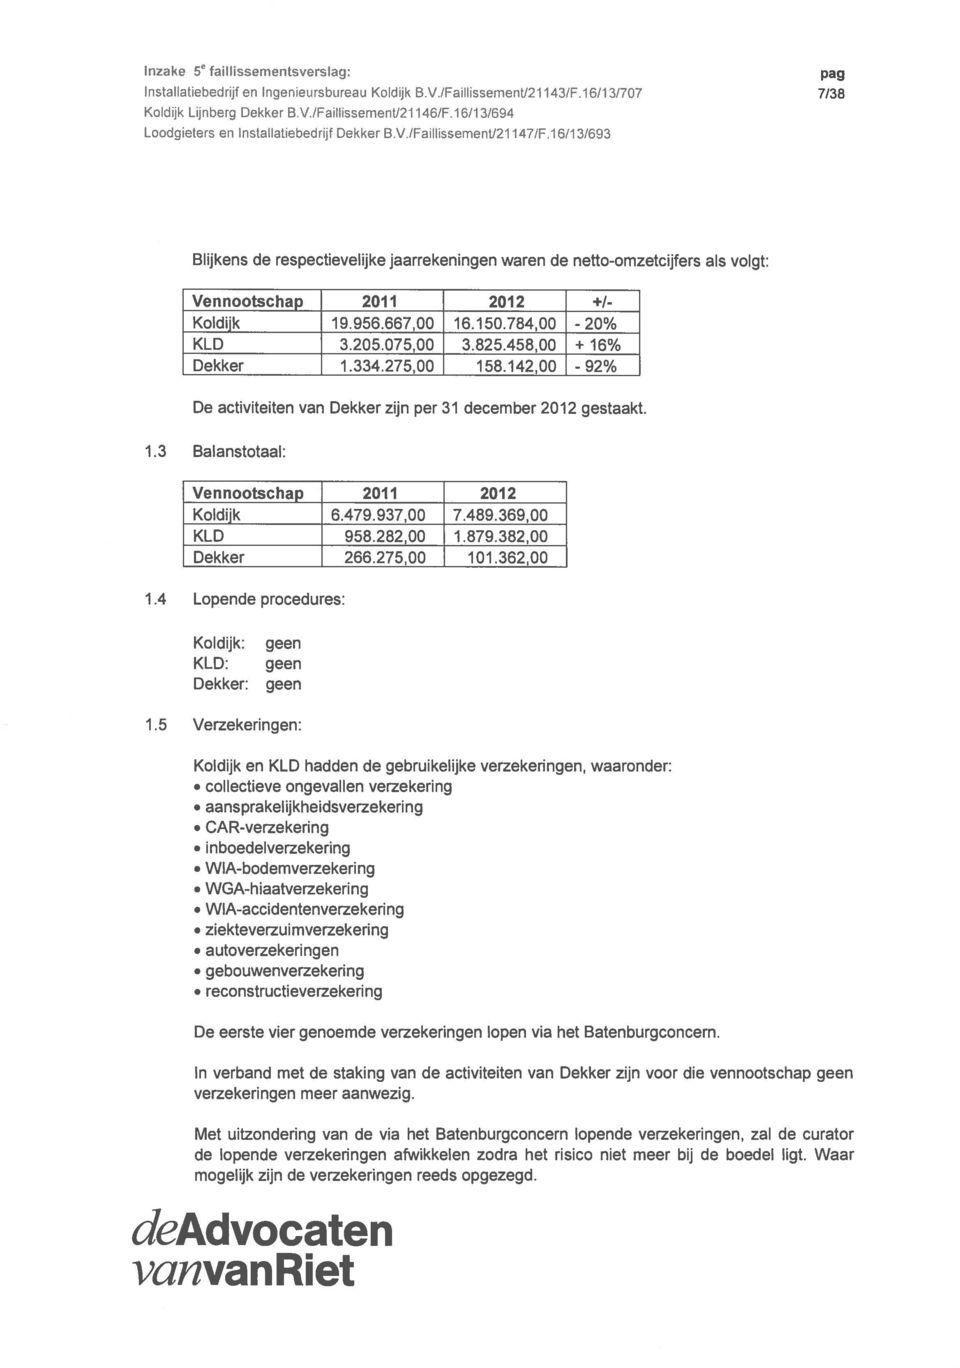 /Faillissementl2l 1 471Fl 6/13/693 Blijkens de respectievelijke jaarrekeningen waren de netto-omzetcijfers als volgt: Vennootschap 2011 2012 +1- Koldijk 19.956.667,00 16.150.784,00-20% KLD 3.205.